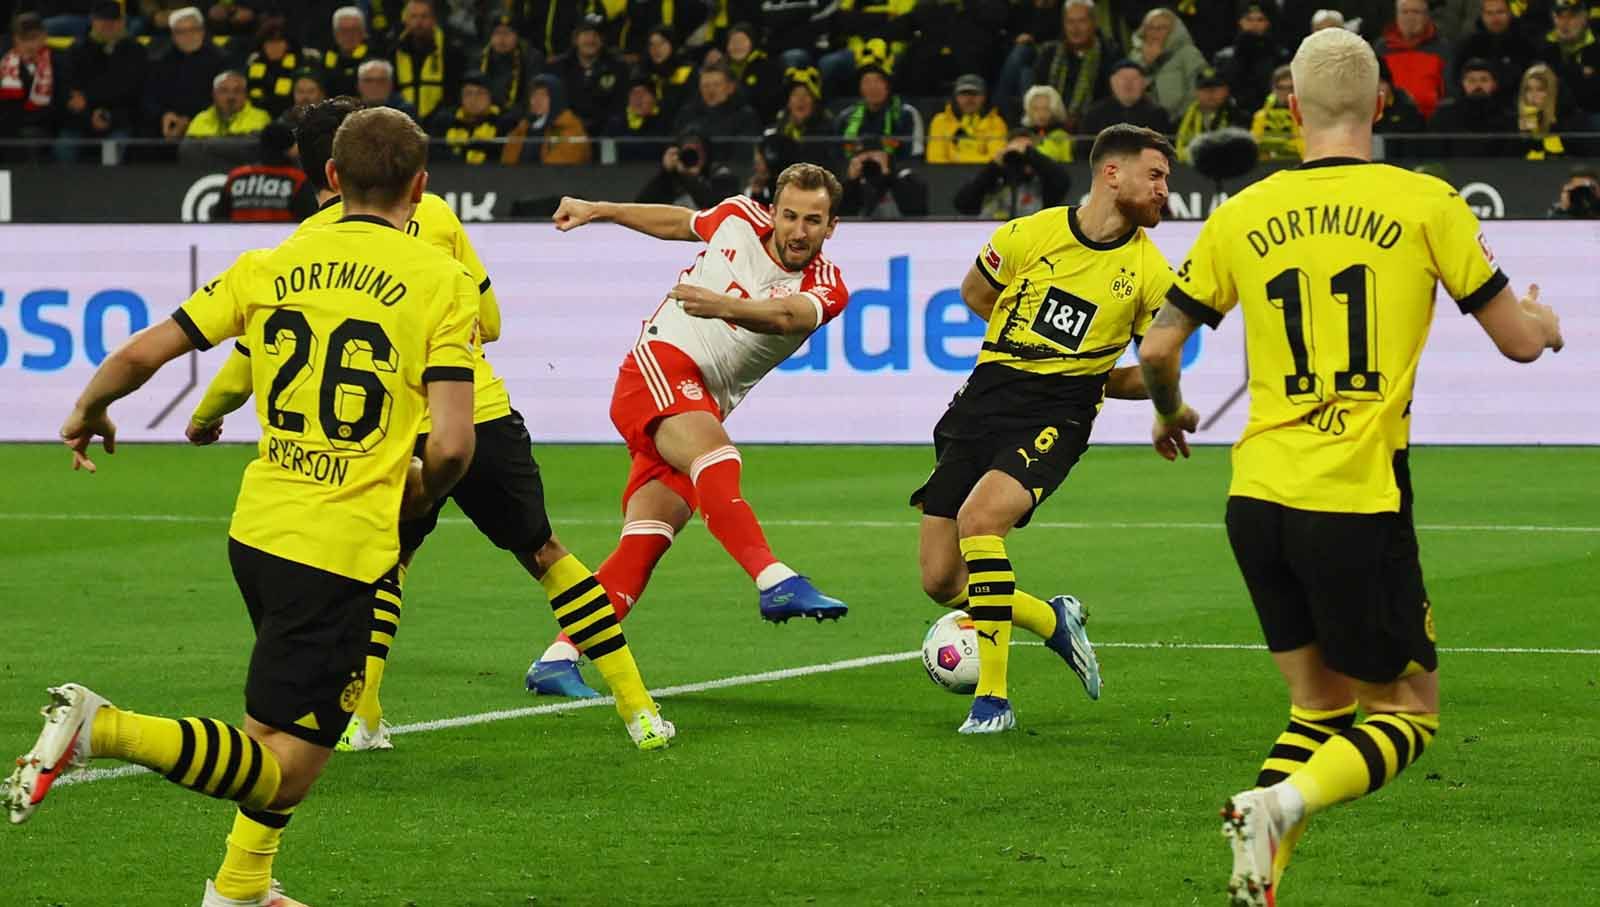 Harry Kane melepaskan tendangan keras ke gawang Borussia Dortmund pada laga Bundesliga Jerman di Stadion Signal Iduna Park. (Foto: REUTERS/Wolfgang Rattay) Copyright: © REUTERS/Wolfgang Rattay